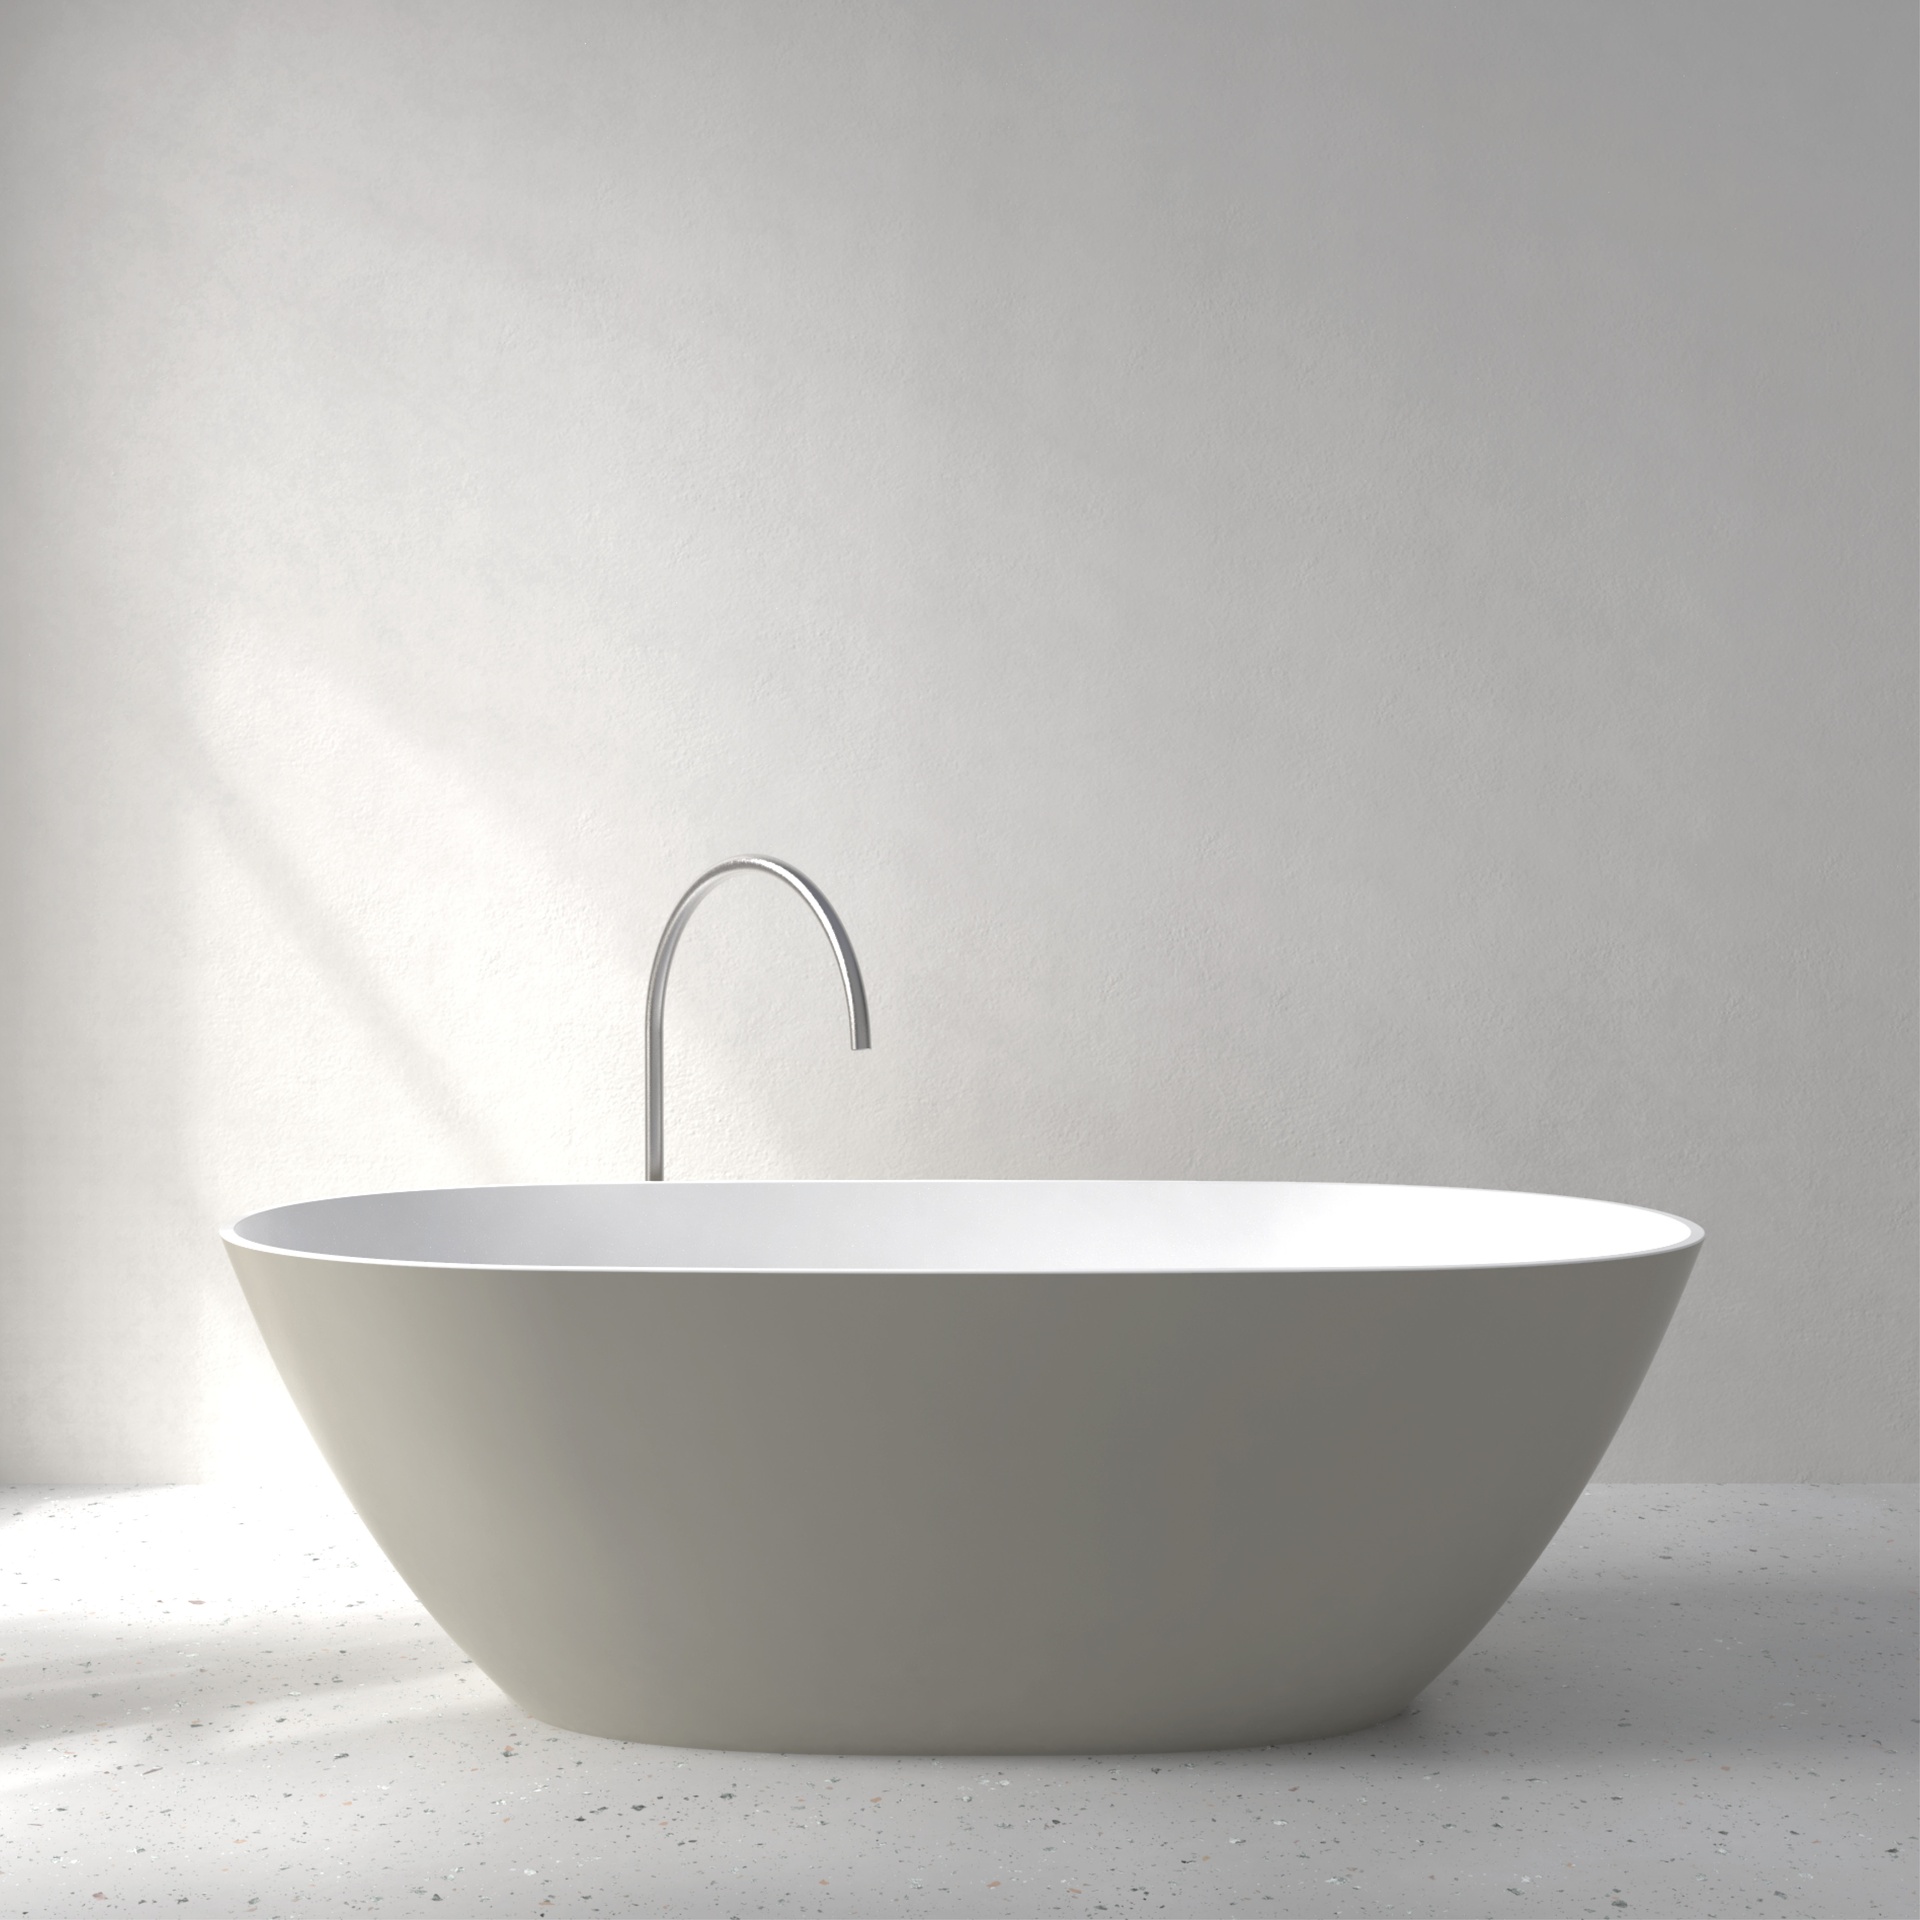 [FMU04-SSGREY] Muse bath with Soft Touch (Silk Grey)